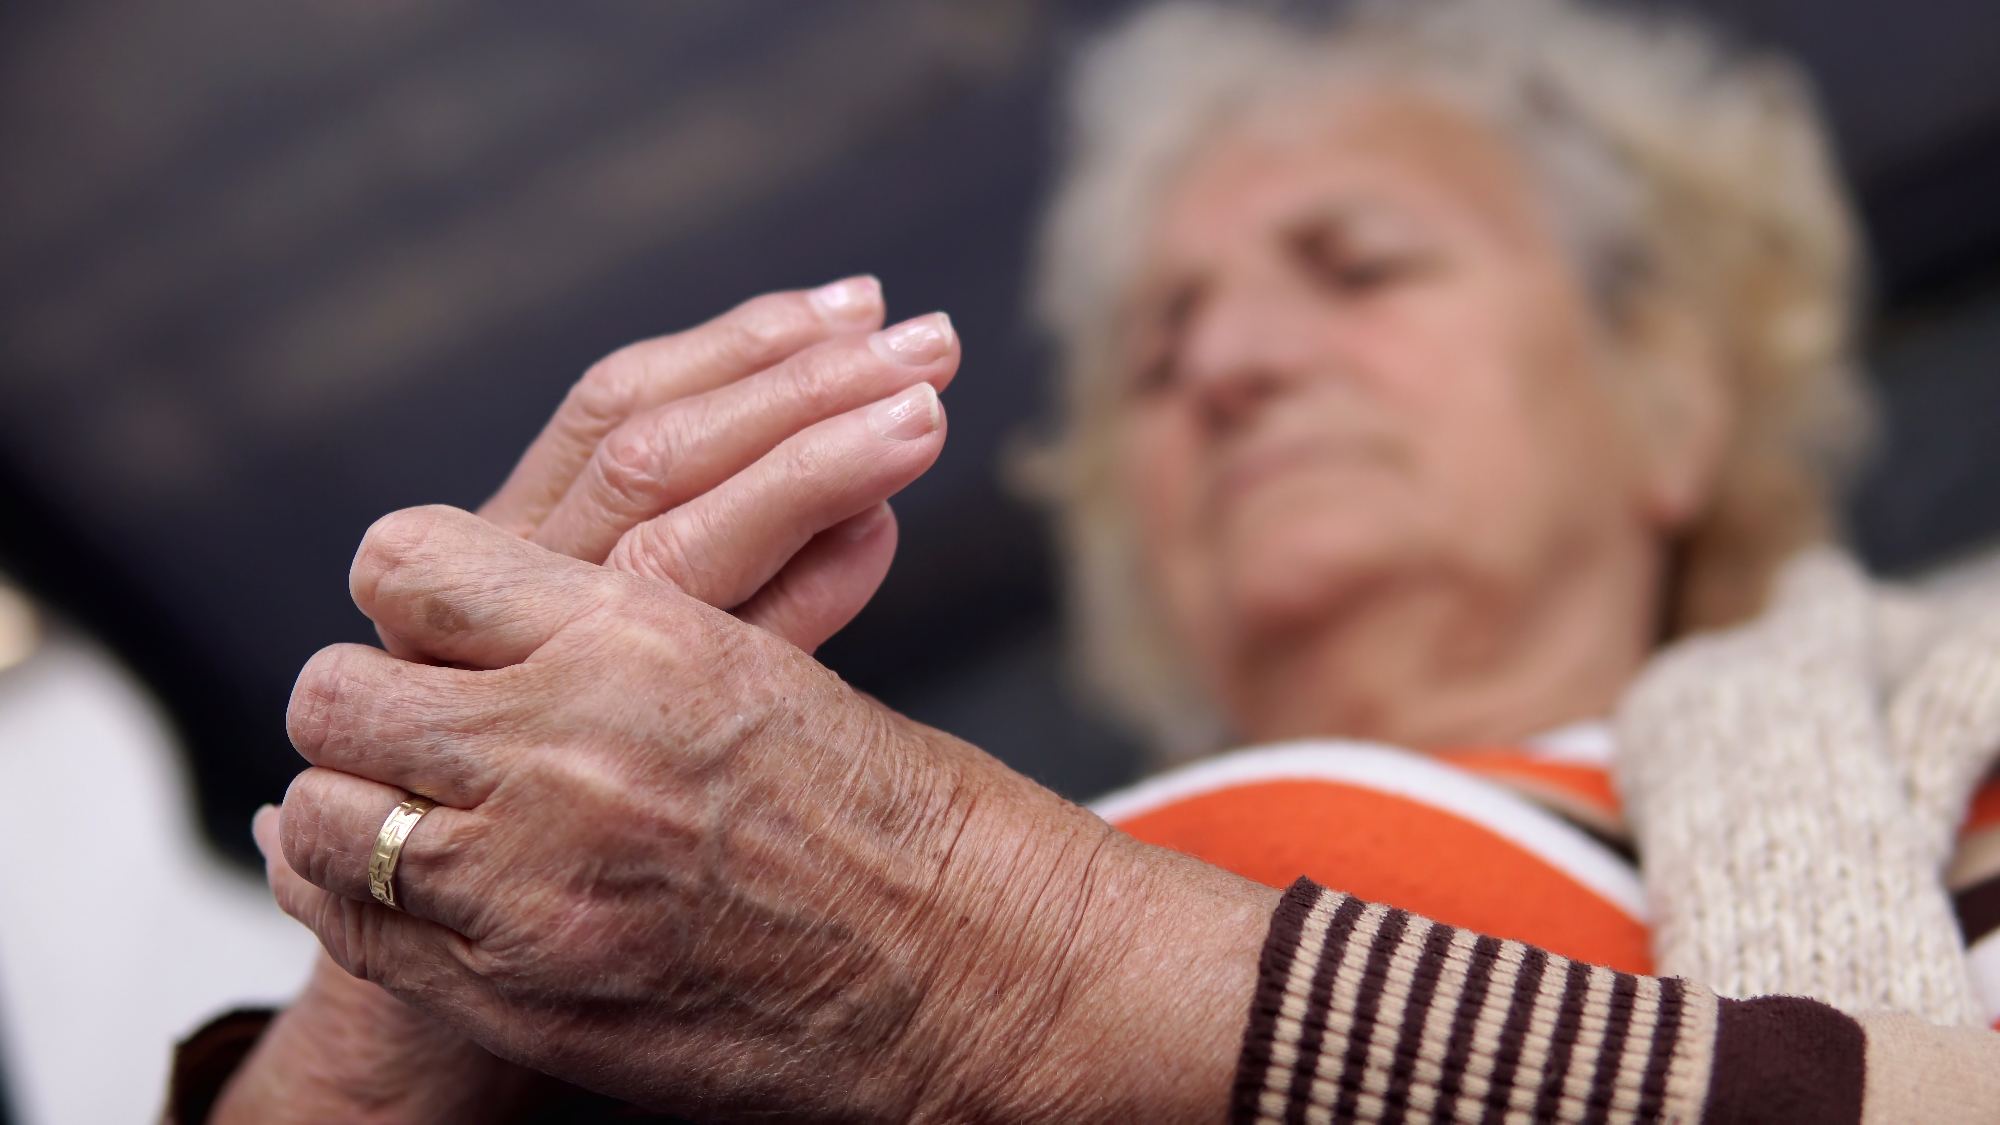 Putika velja za precej pogosto in zapleteno obliko artritisa